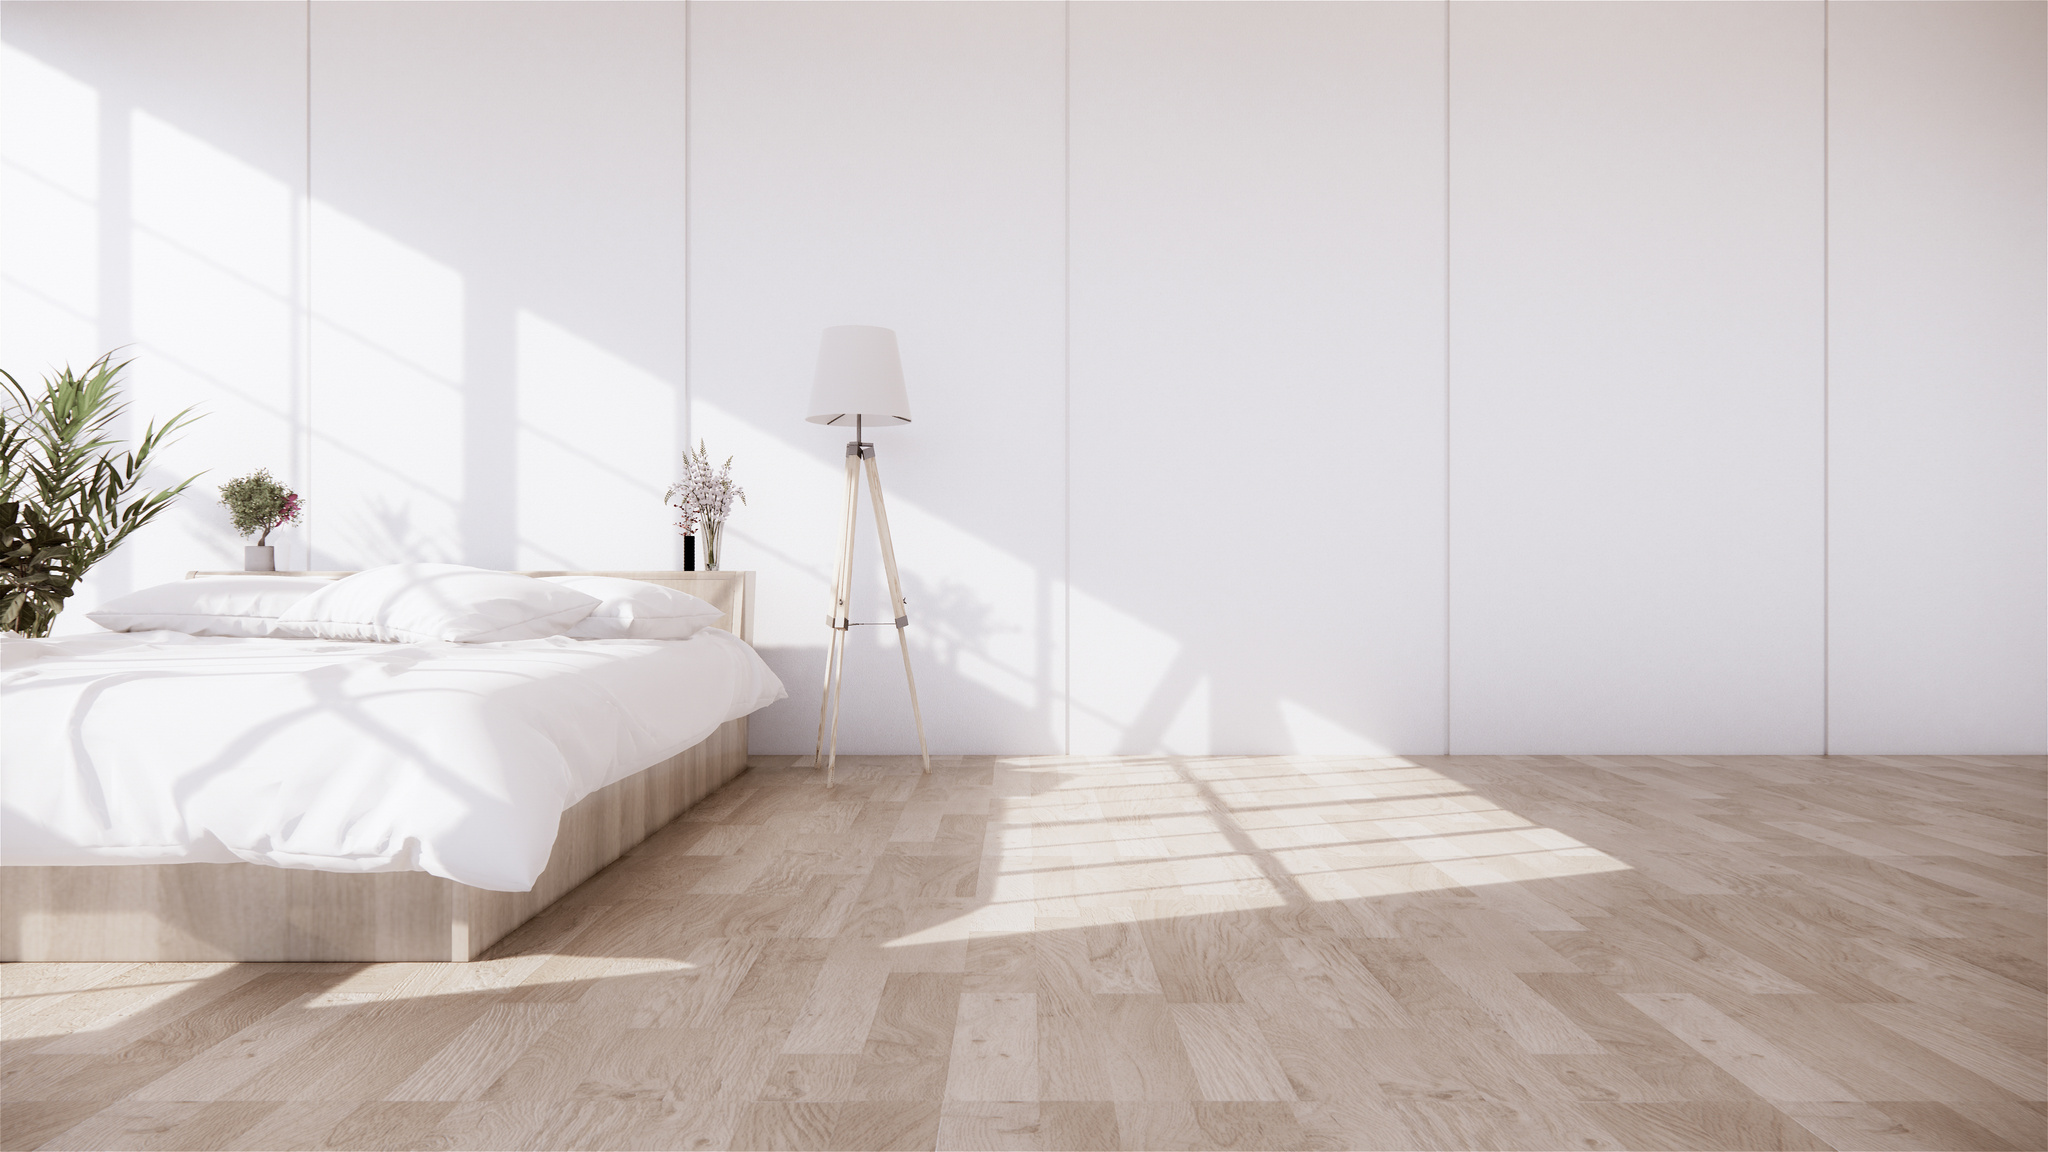 Bedroom Interior with Wooden Floor